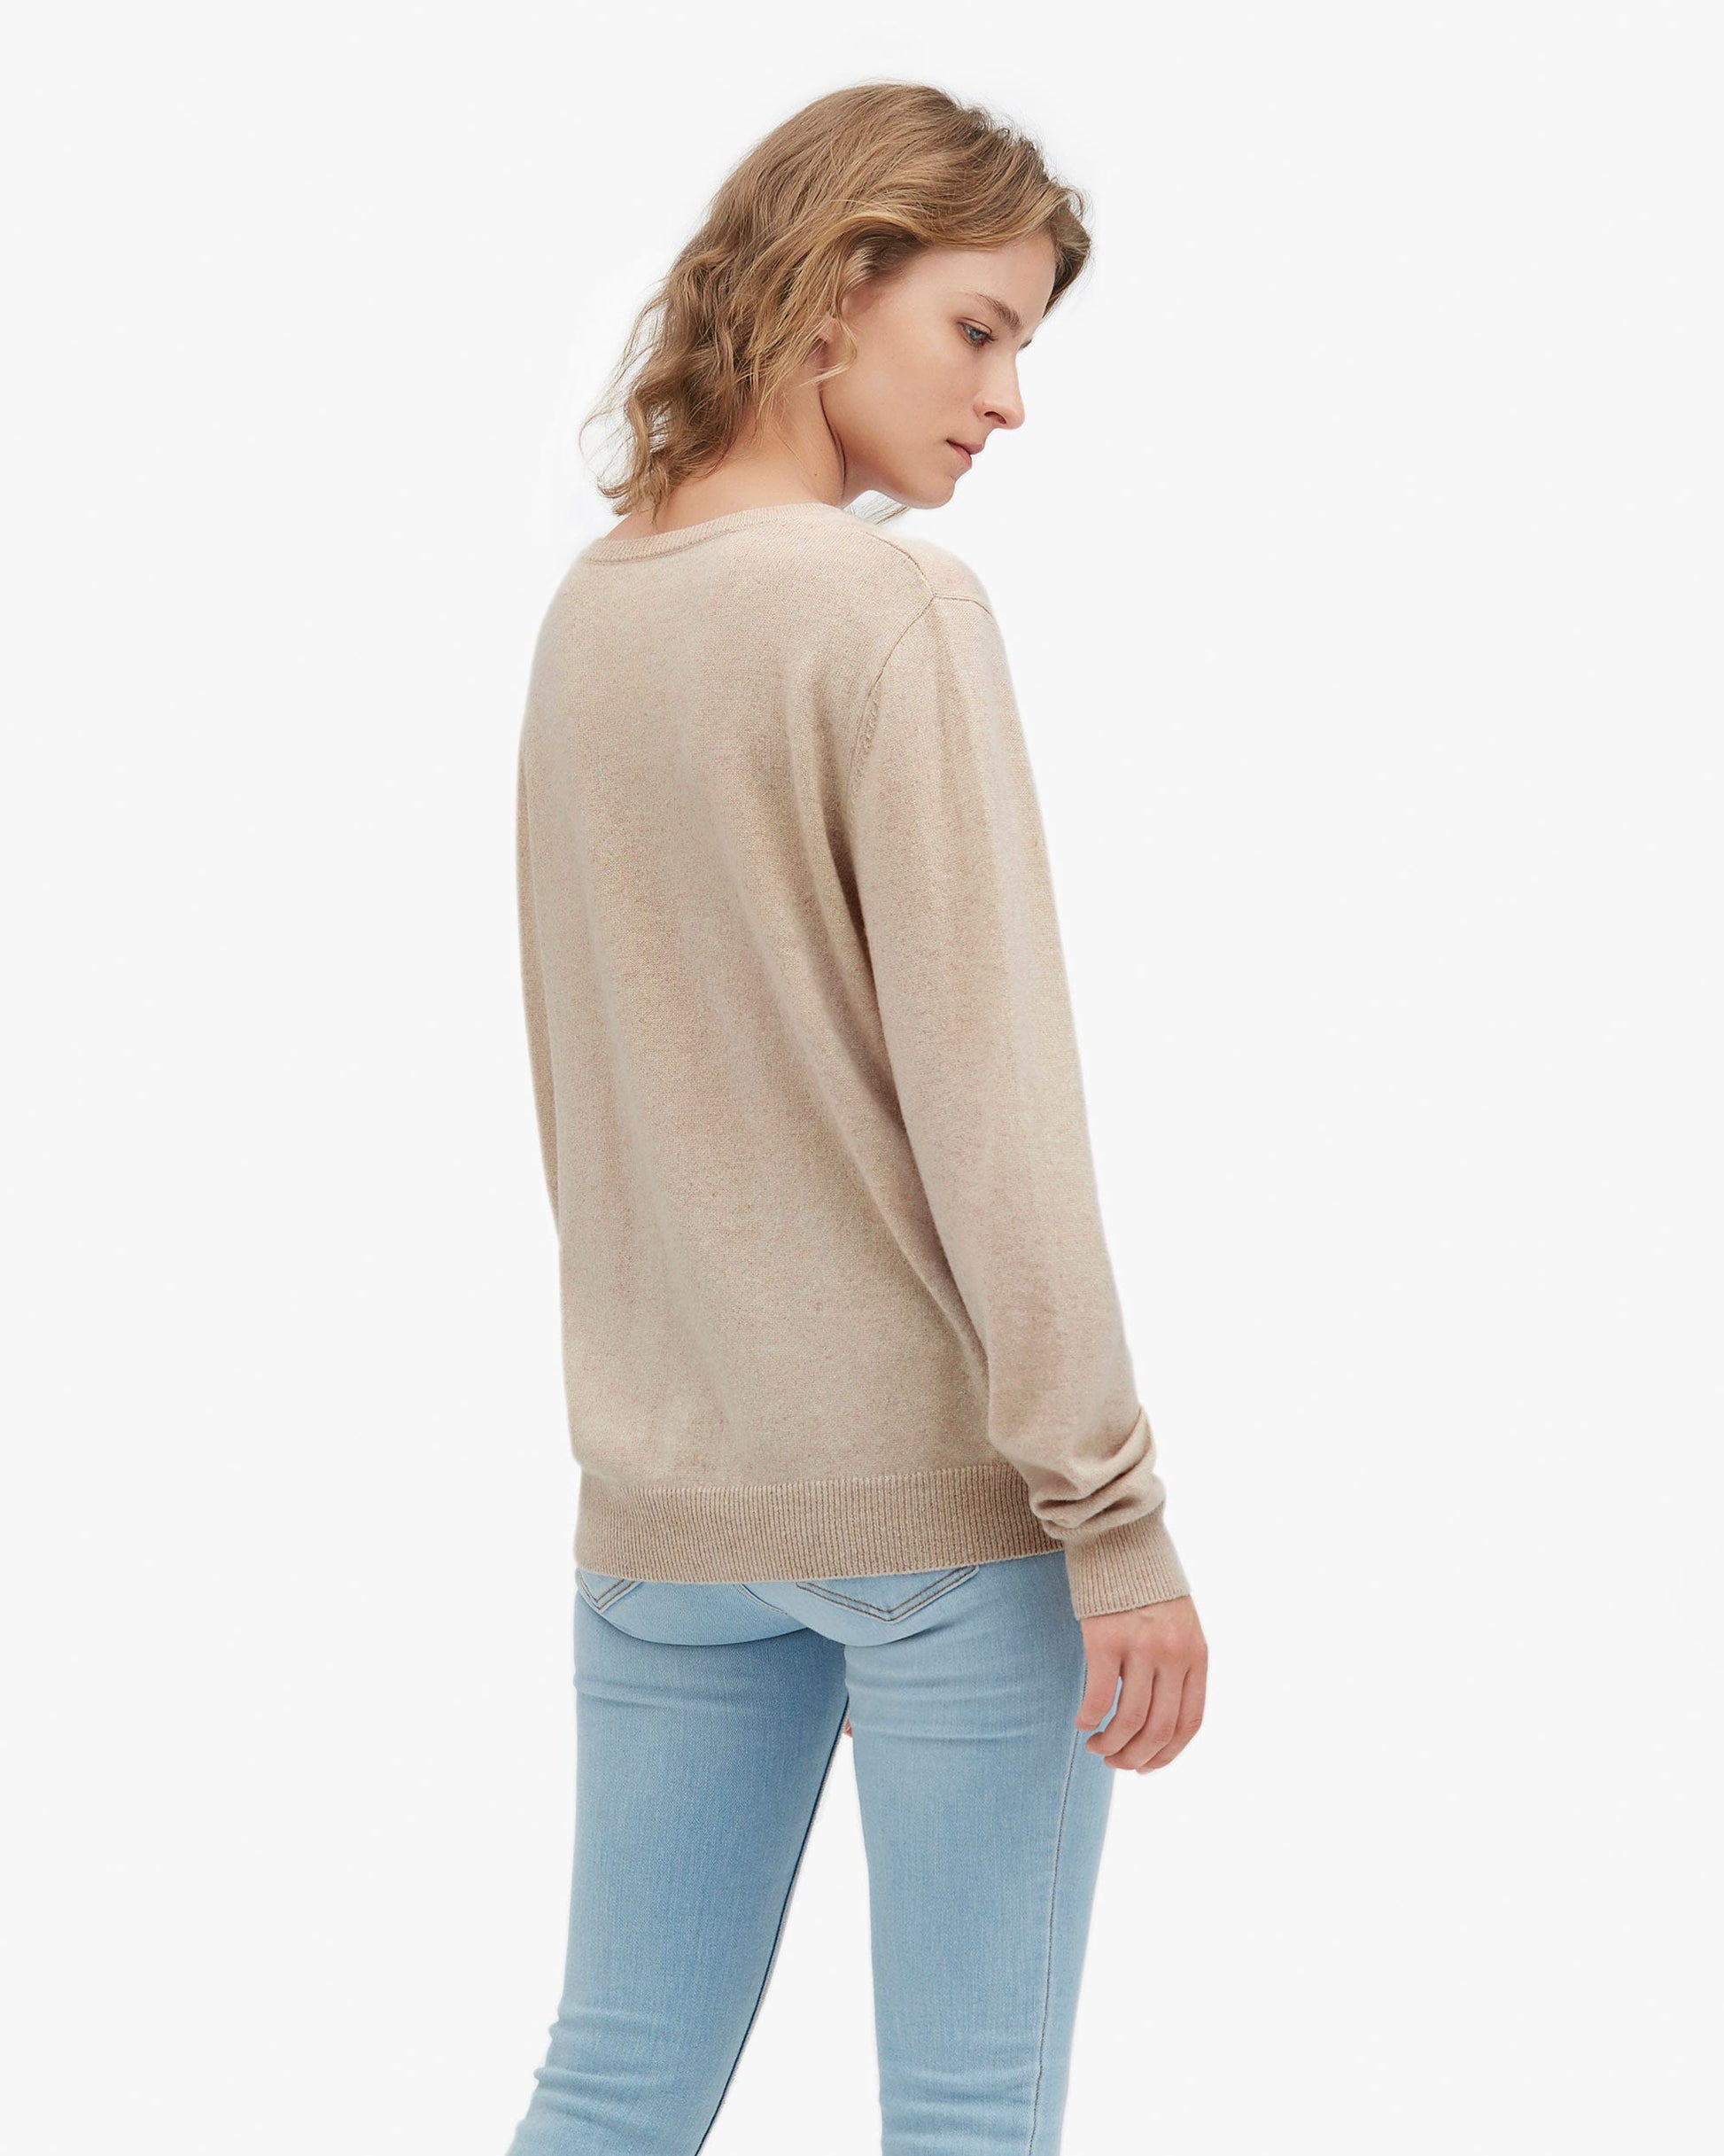 LILYSILK Cashmere Sweater Women Beige Finest Cashmere Timeless Relaxed Fit Cashmere 100 Sweater L